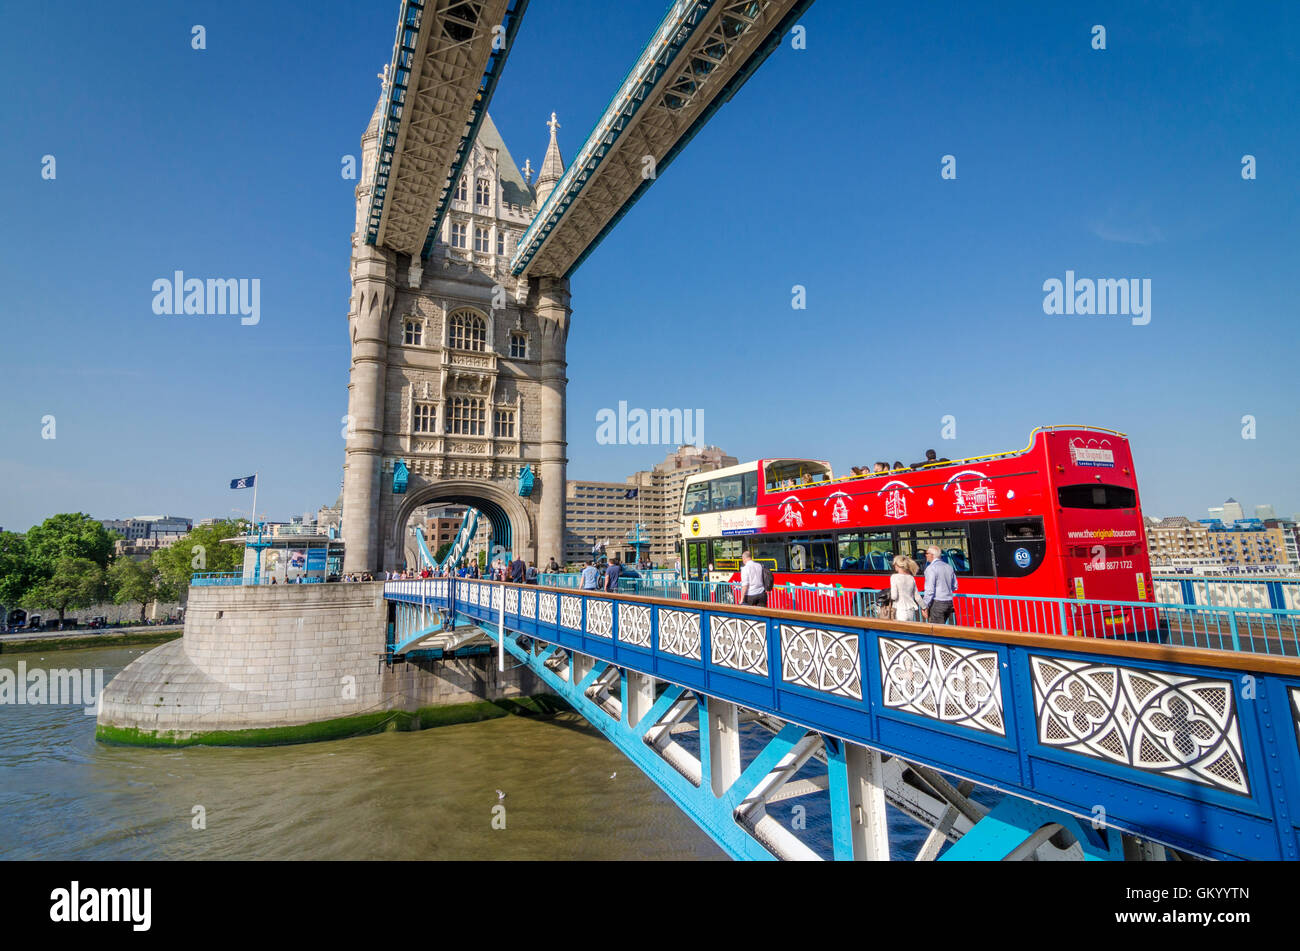 London bus de tournée sur le Tower Bridge Banque D'Images